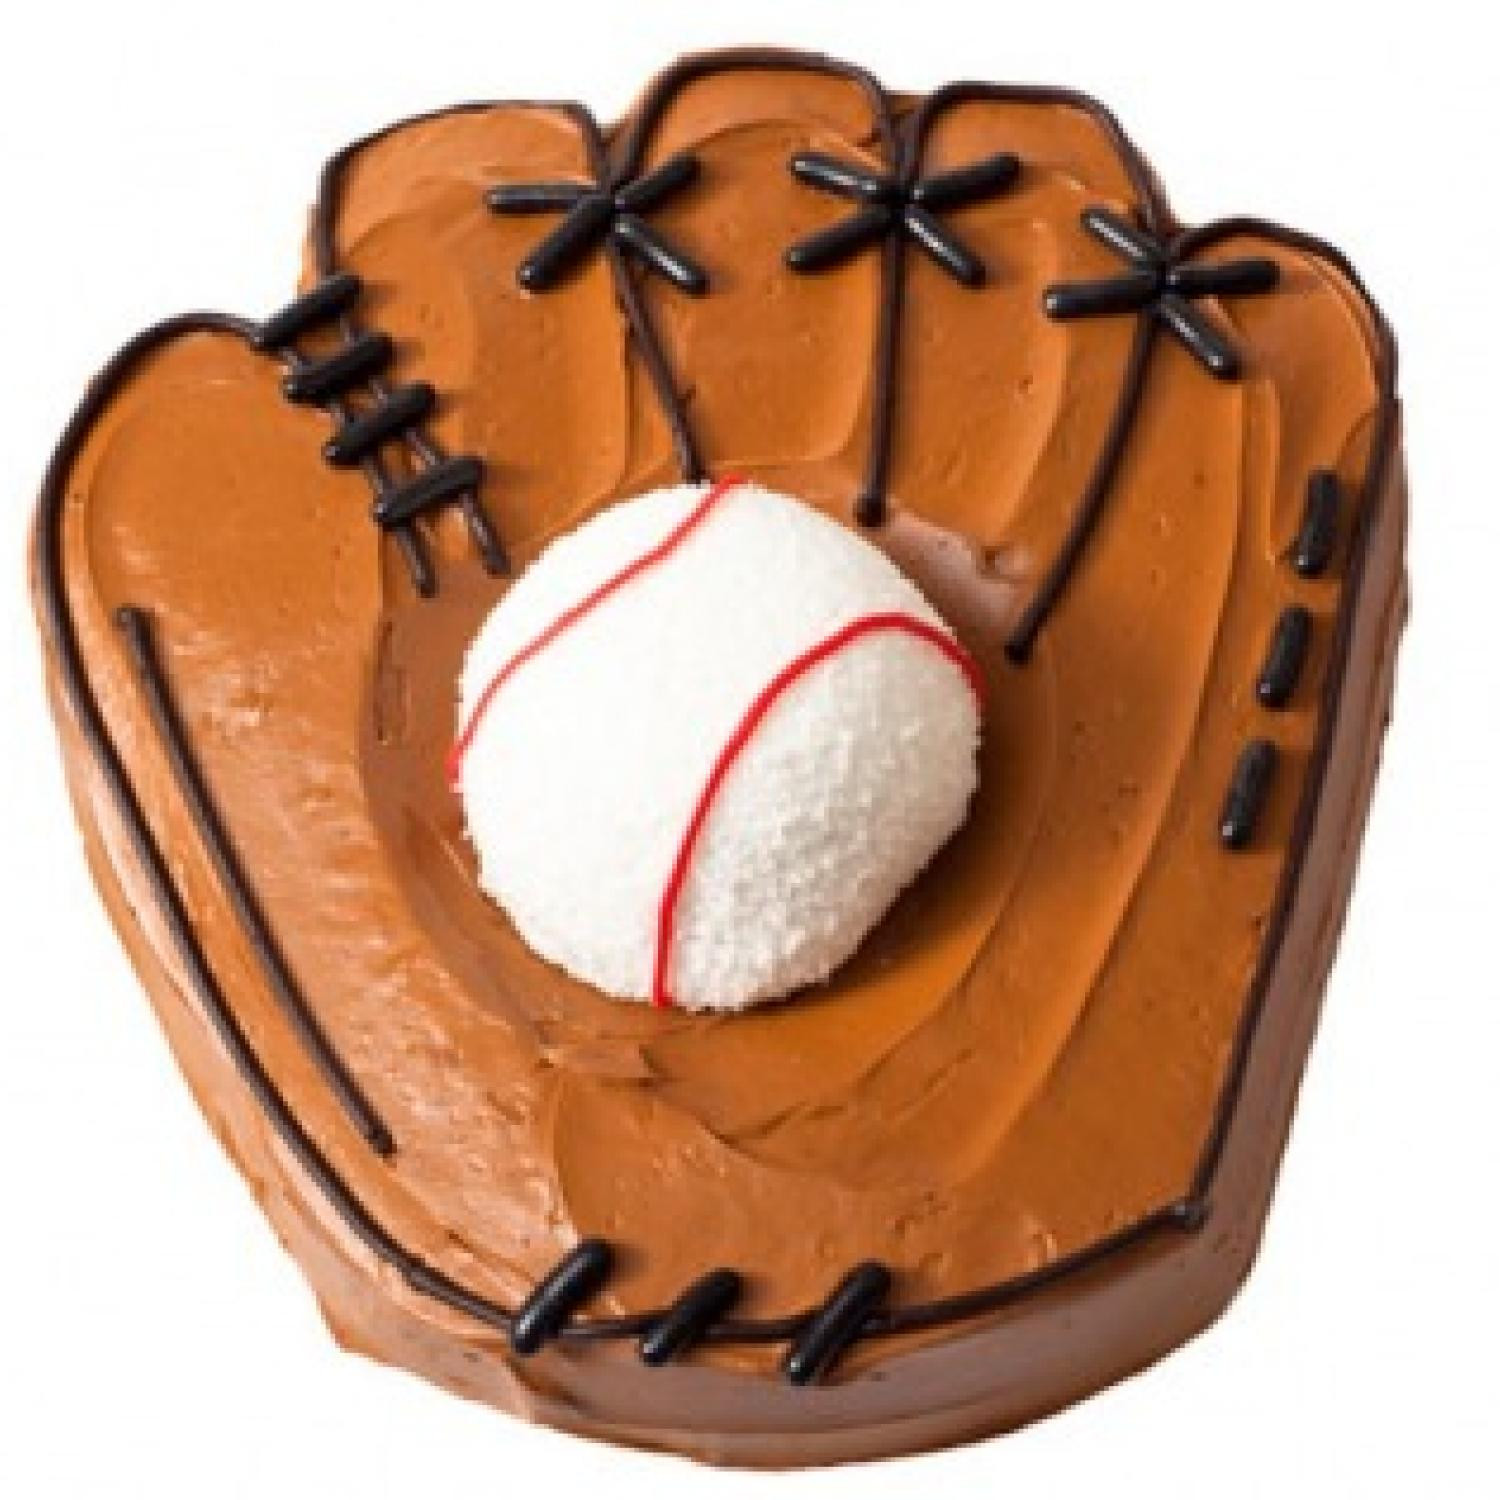 Baseball Birthday Cake
 Baseball Birthday Cake Design